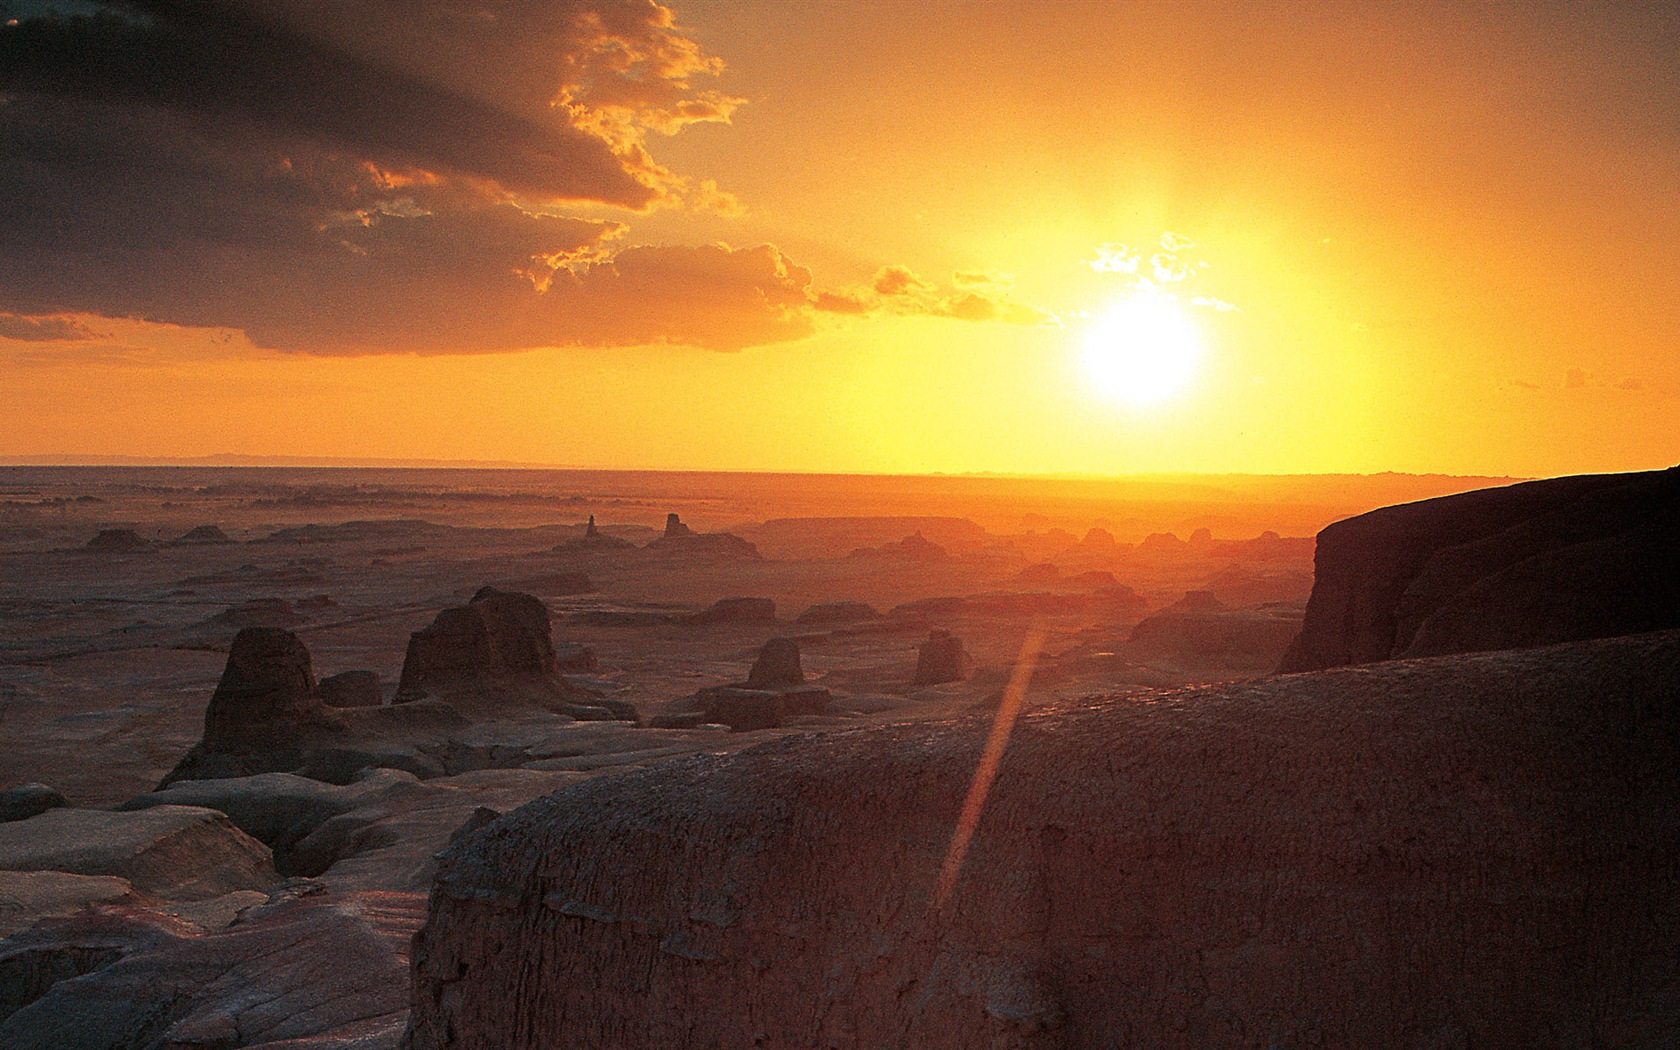 Les déserts chauds et arides, de Windows 8 fonds d'écran widescreen panoramique #12 - 1680x1050